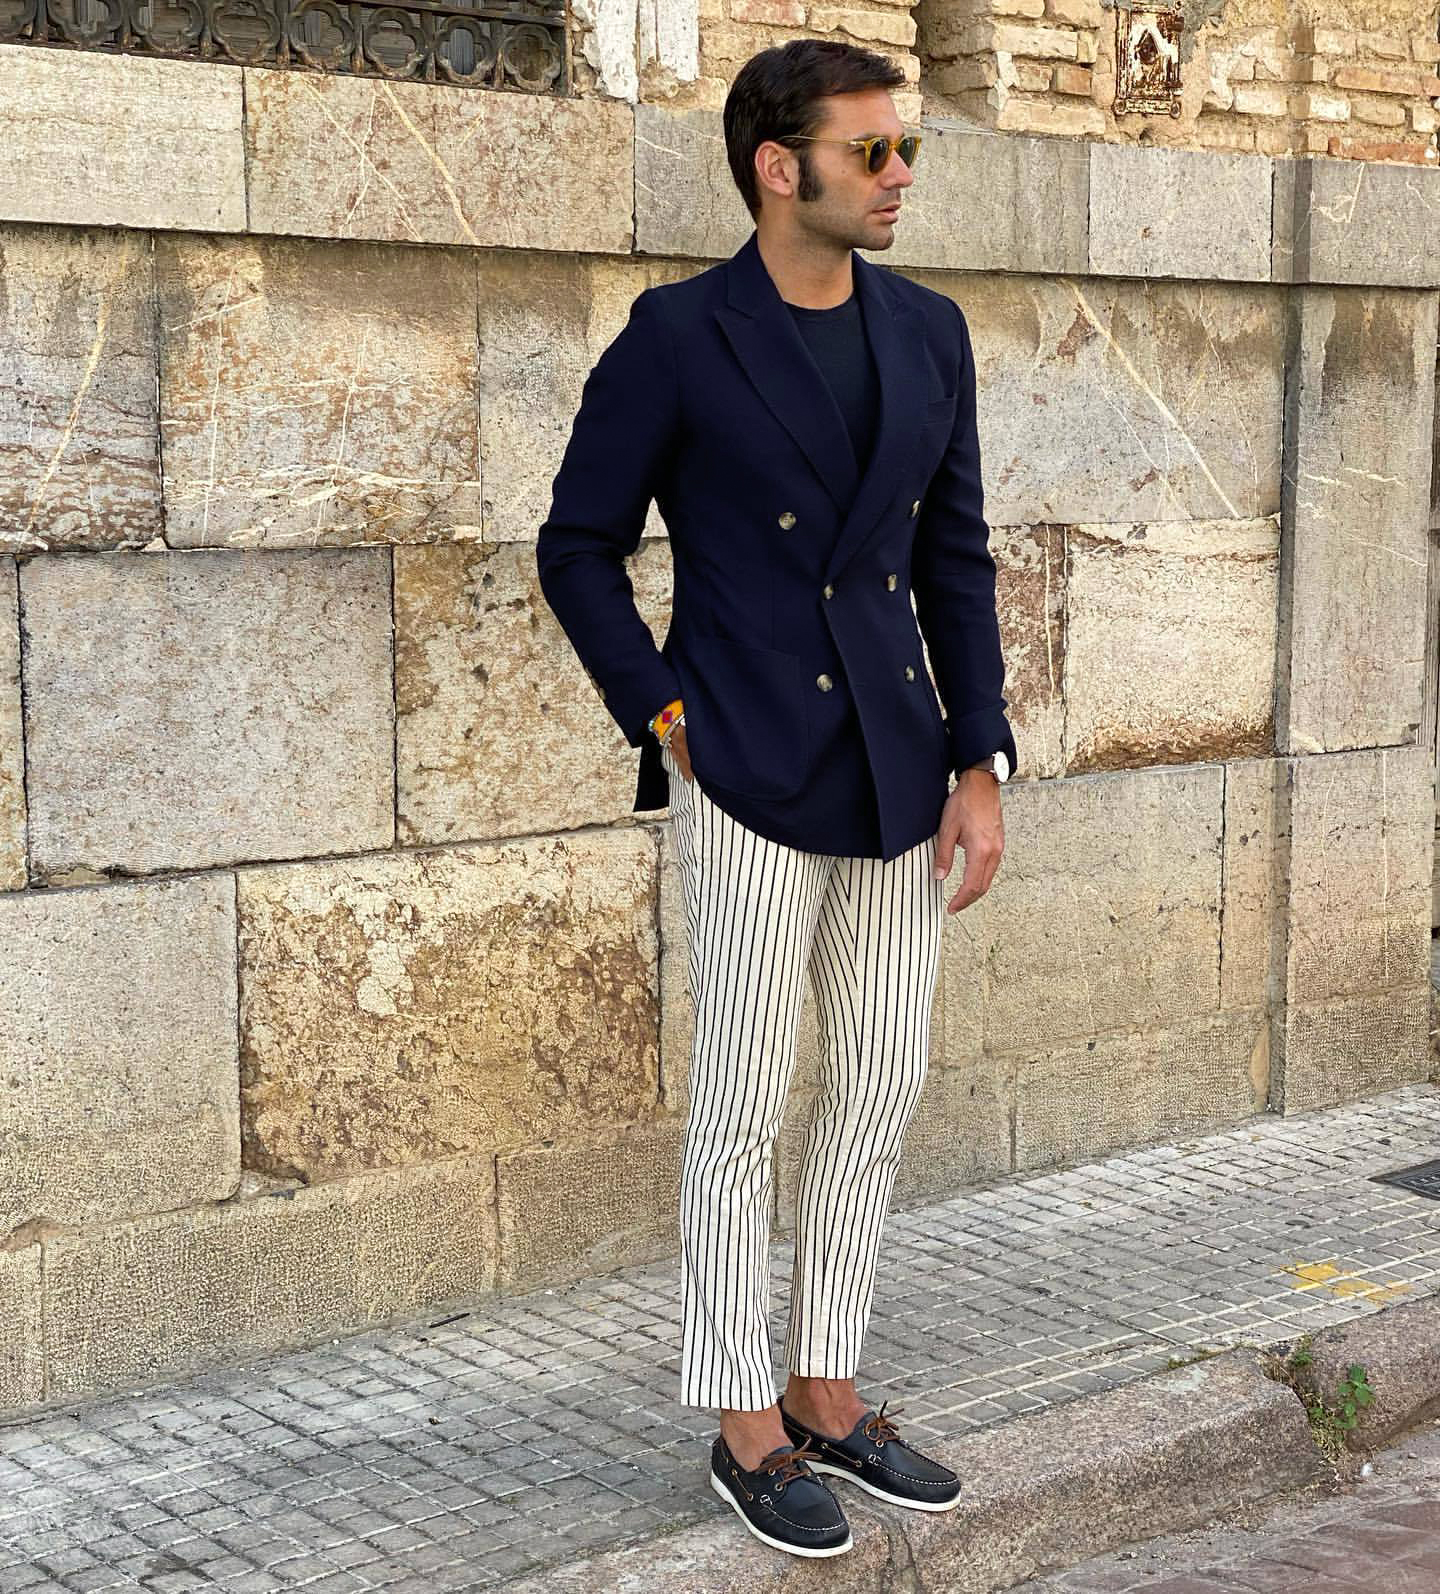 Viacortesa Suit Trouser black striped pattern casual look Fashion Suits Suit Trousers 